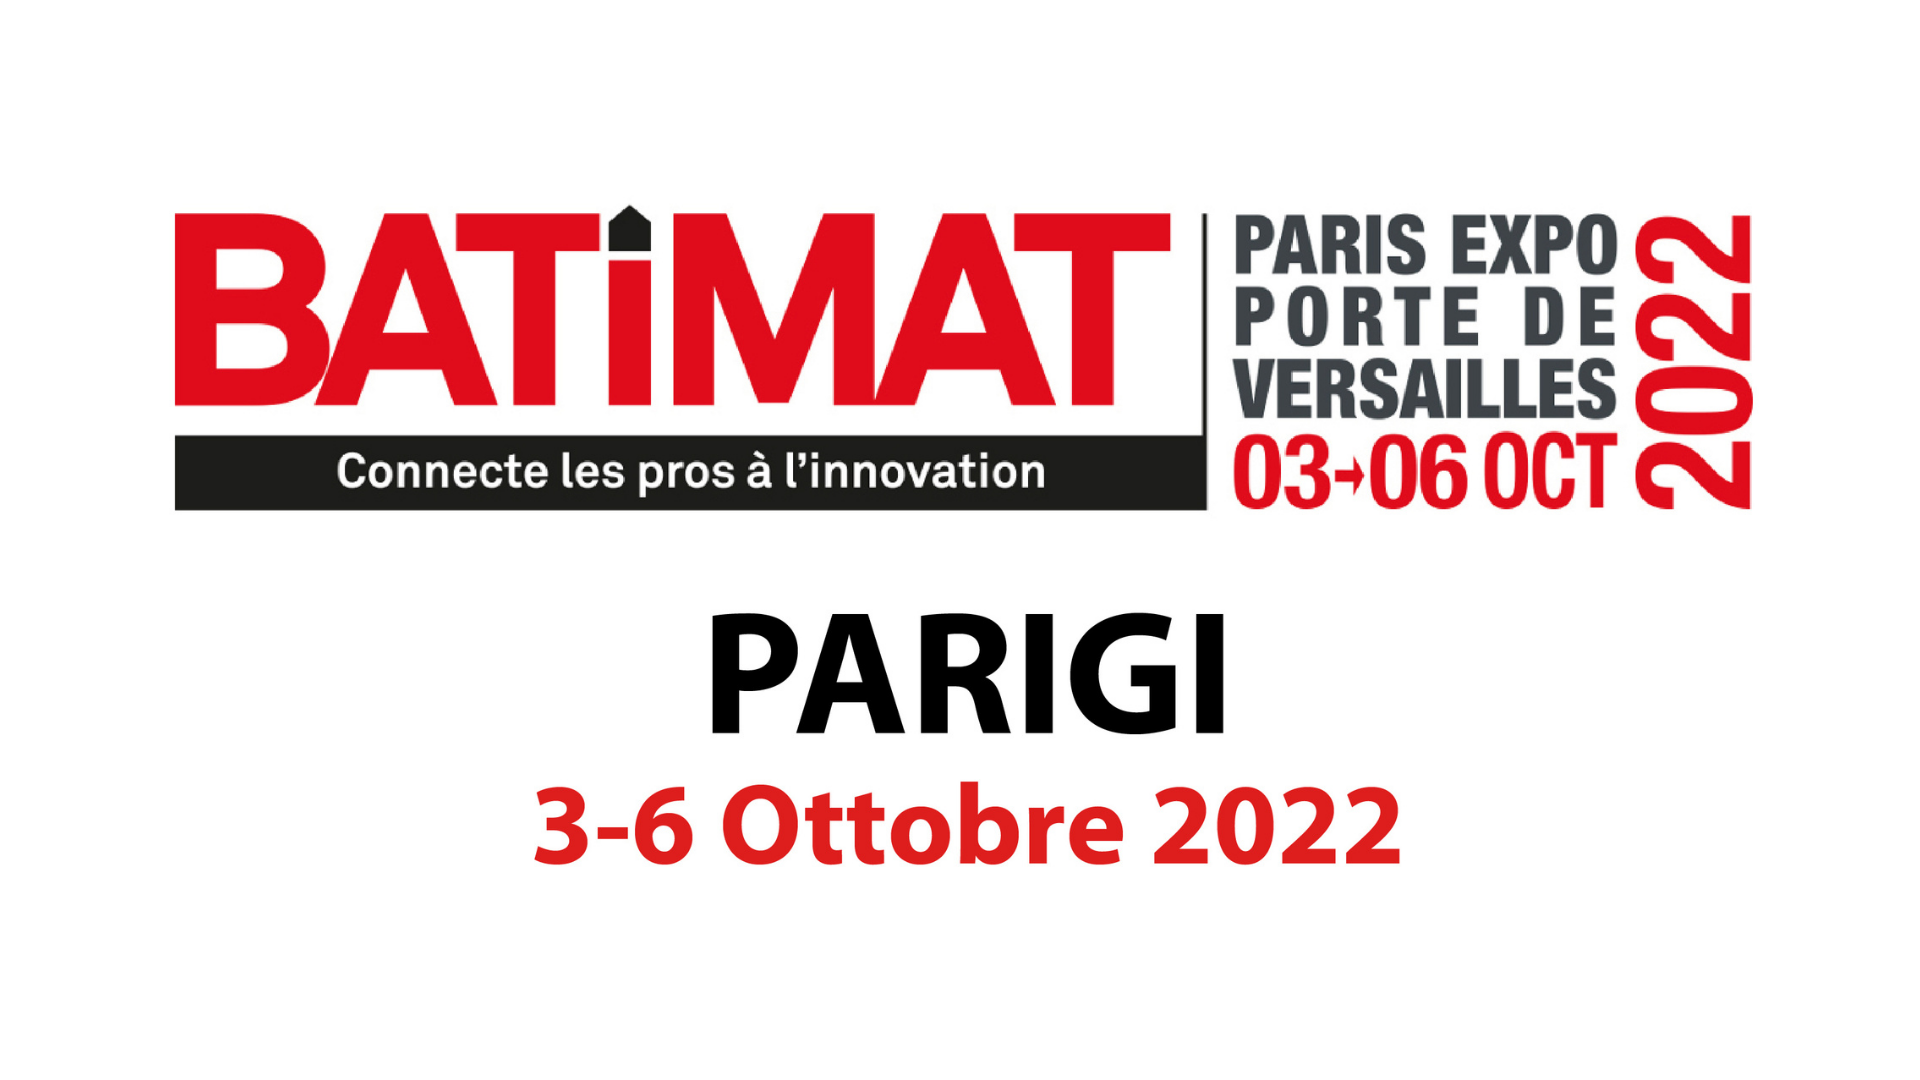 Batimat 3-6 ottobre 2022, porte de versailles - parigi